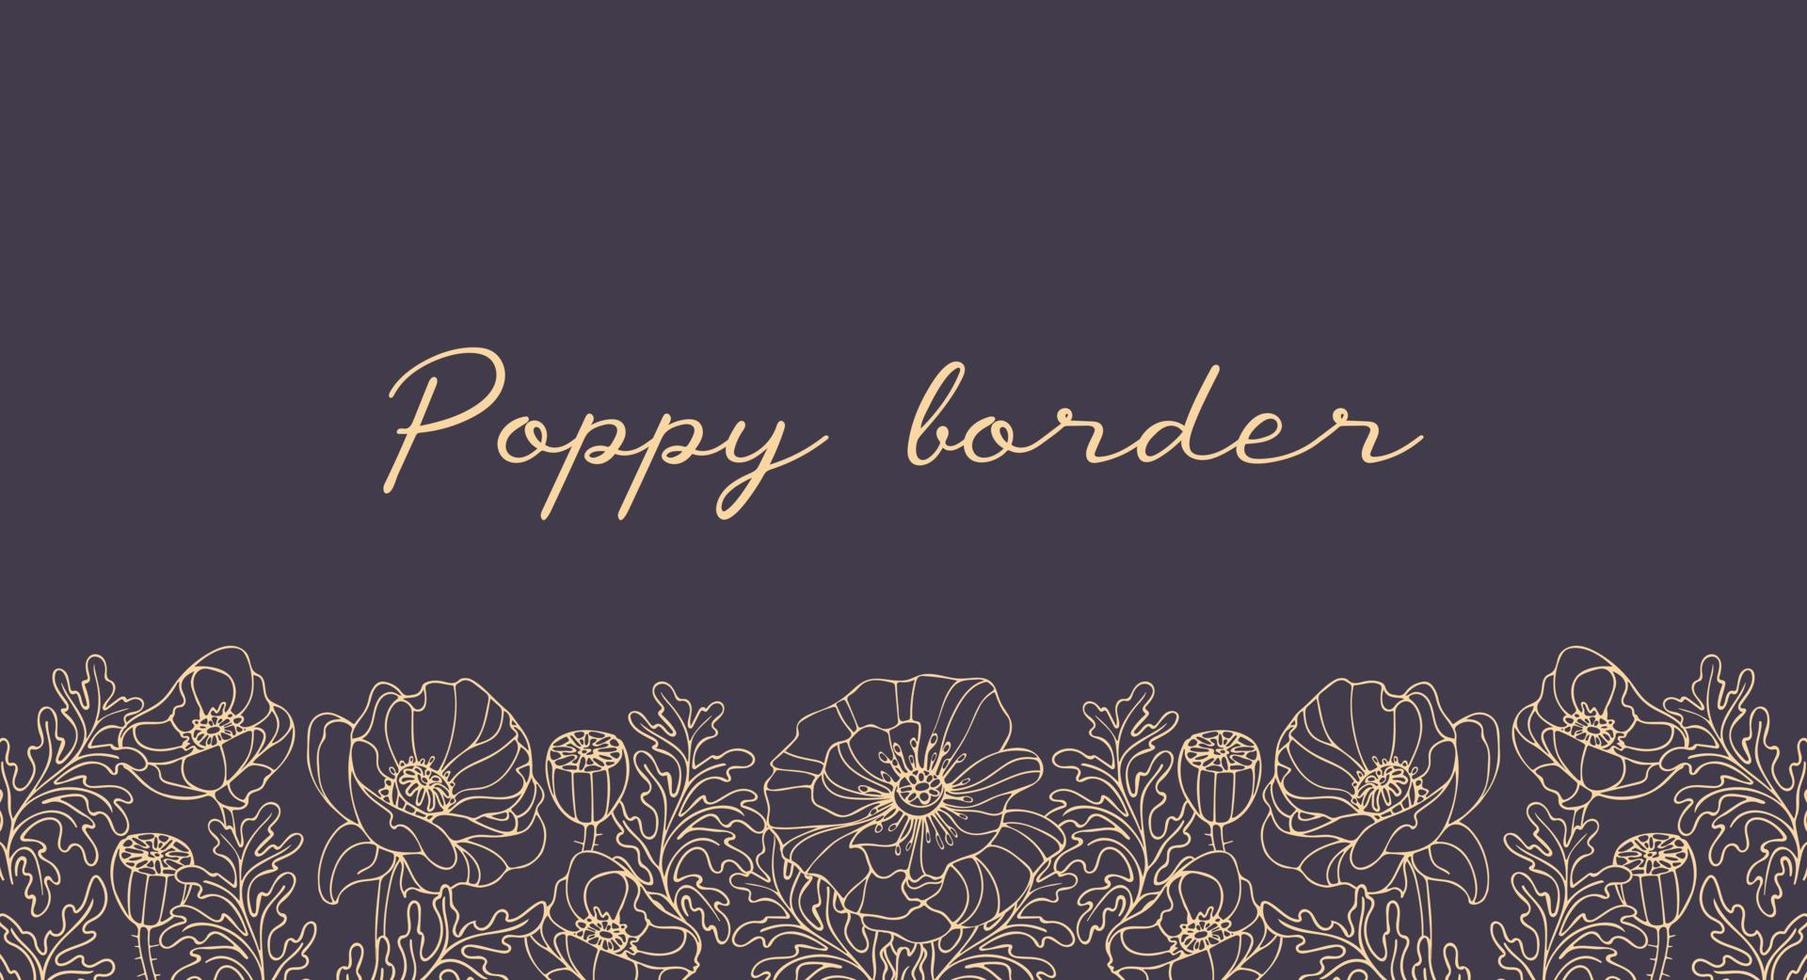 bordure horizontale de fleurs de pavot doré vintage sur fond sombre. art nouveau, moderne. illustration botanique pour bannières, impression sur tissu, cadre, site web, flyer. vecteur